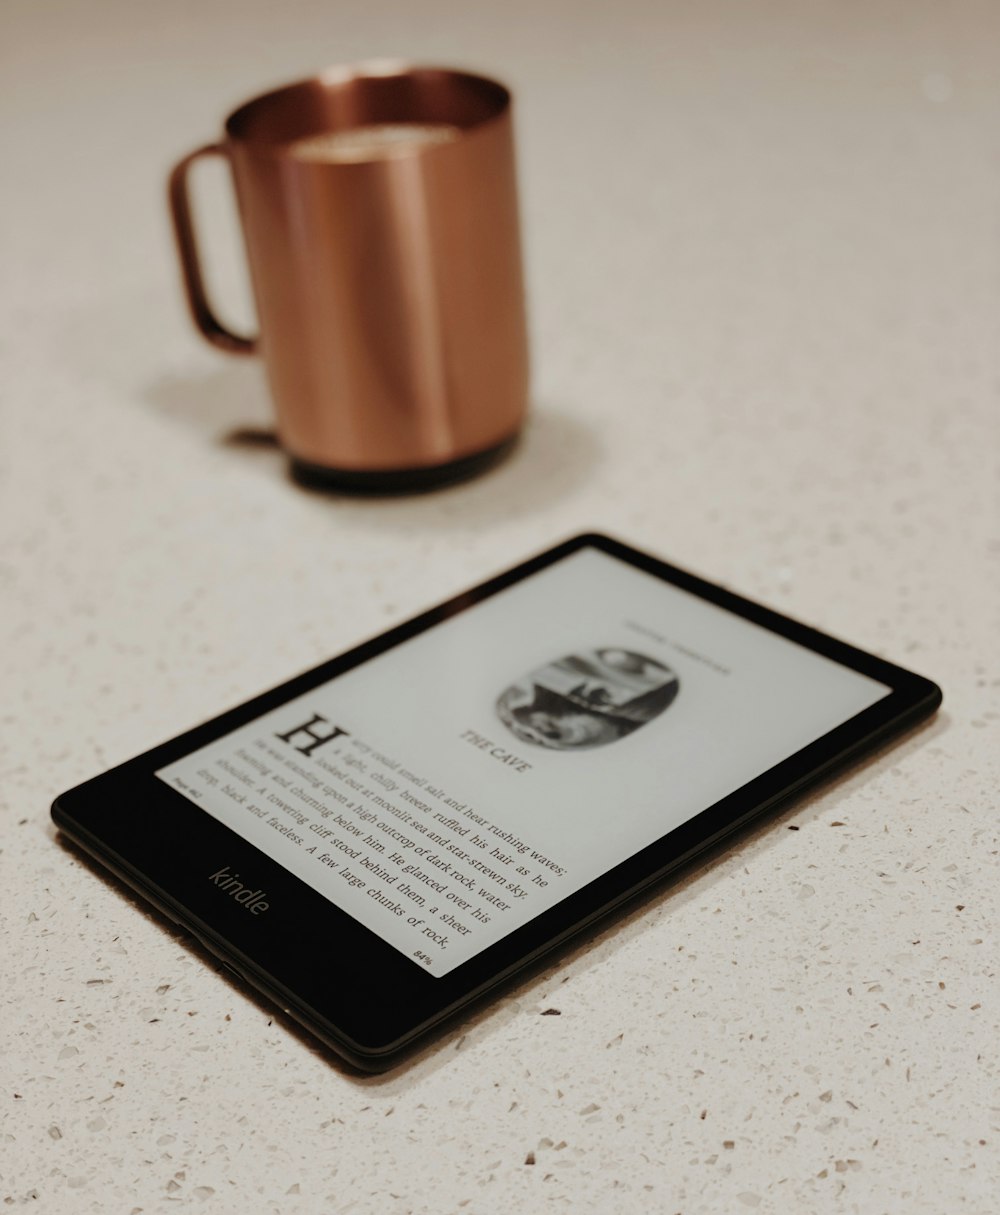 une tablette posée sur une table à côté d’une tasse à café